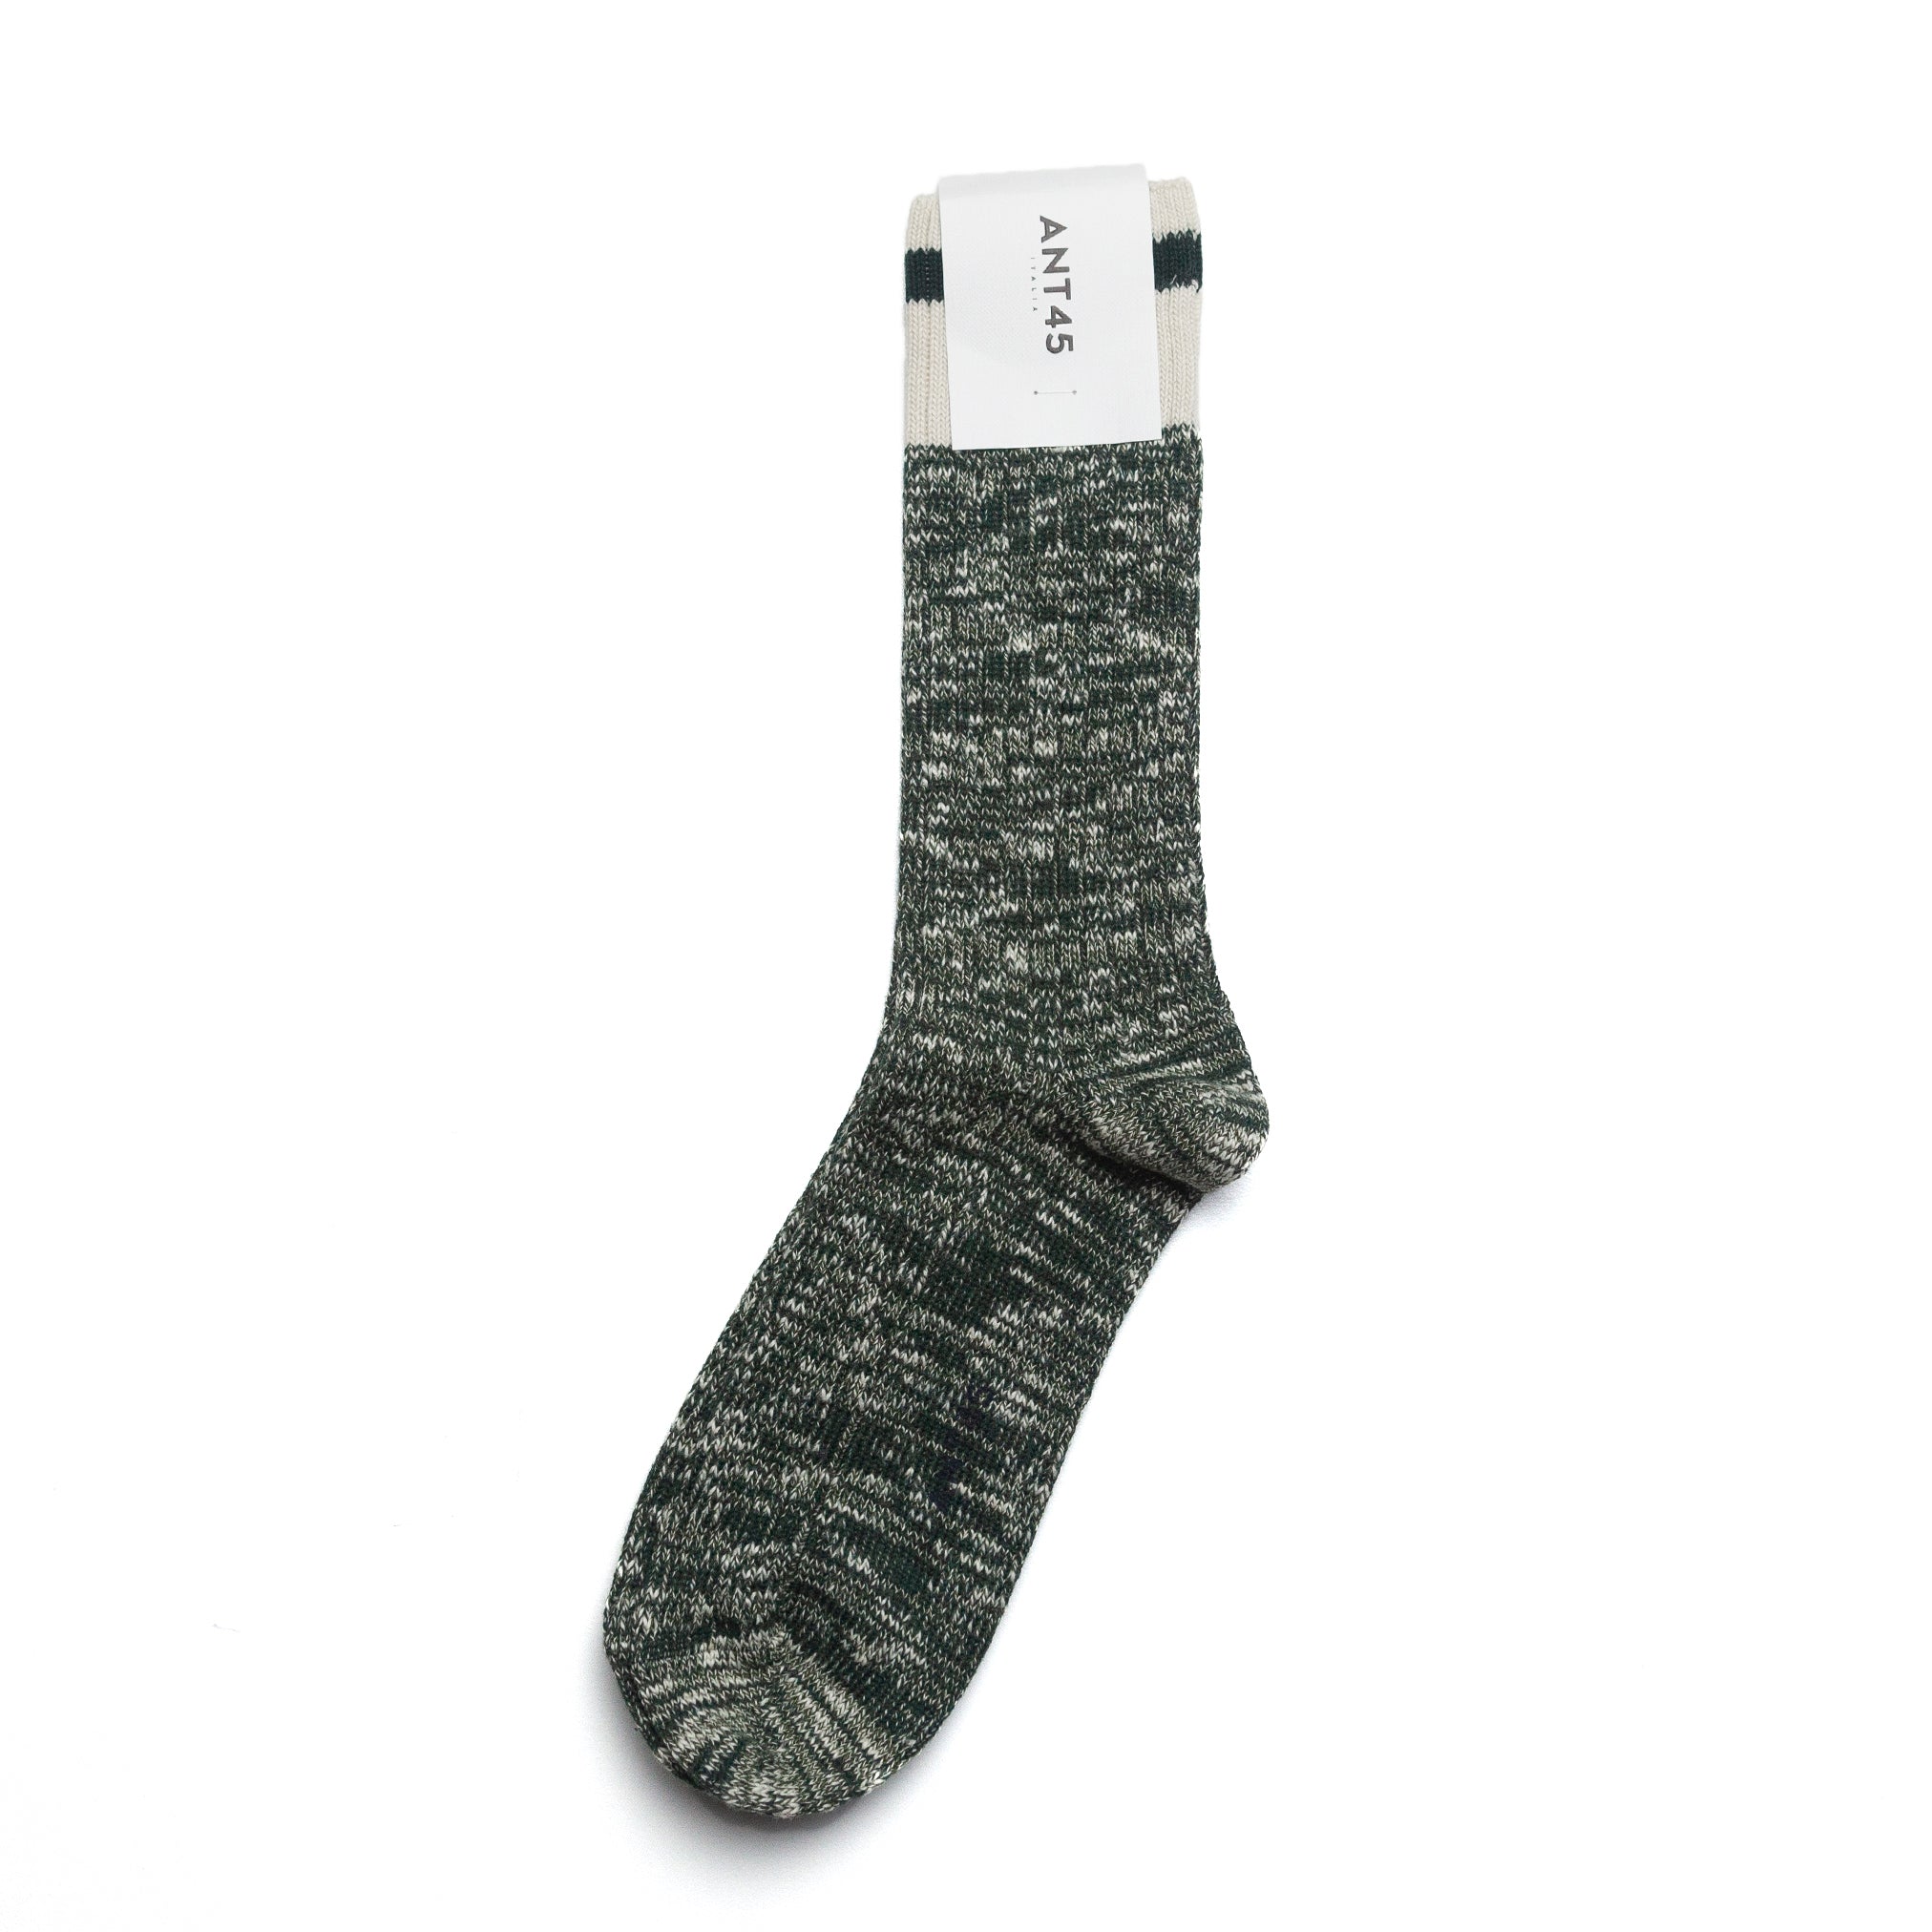 Firenze Sock in Marled Green